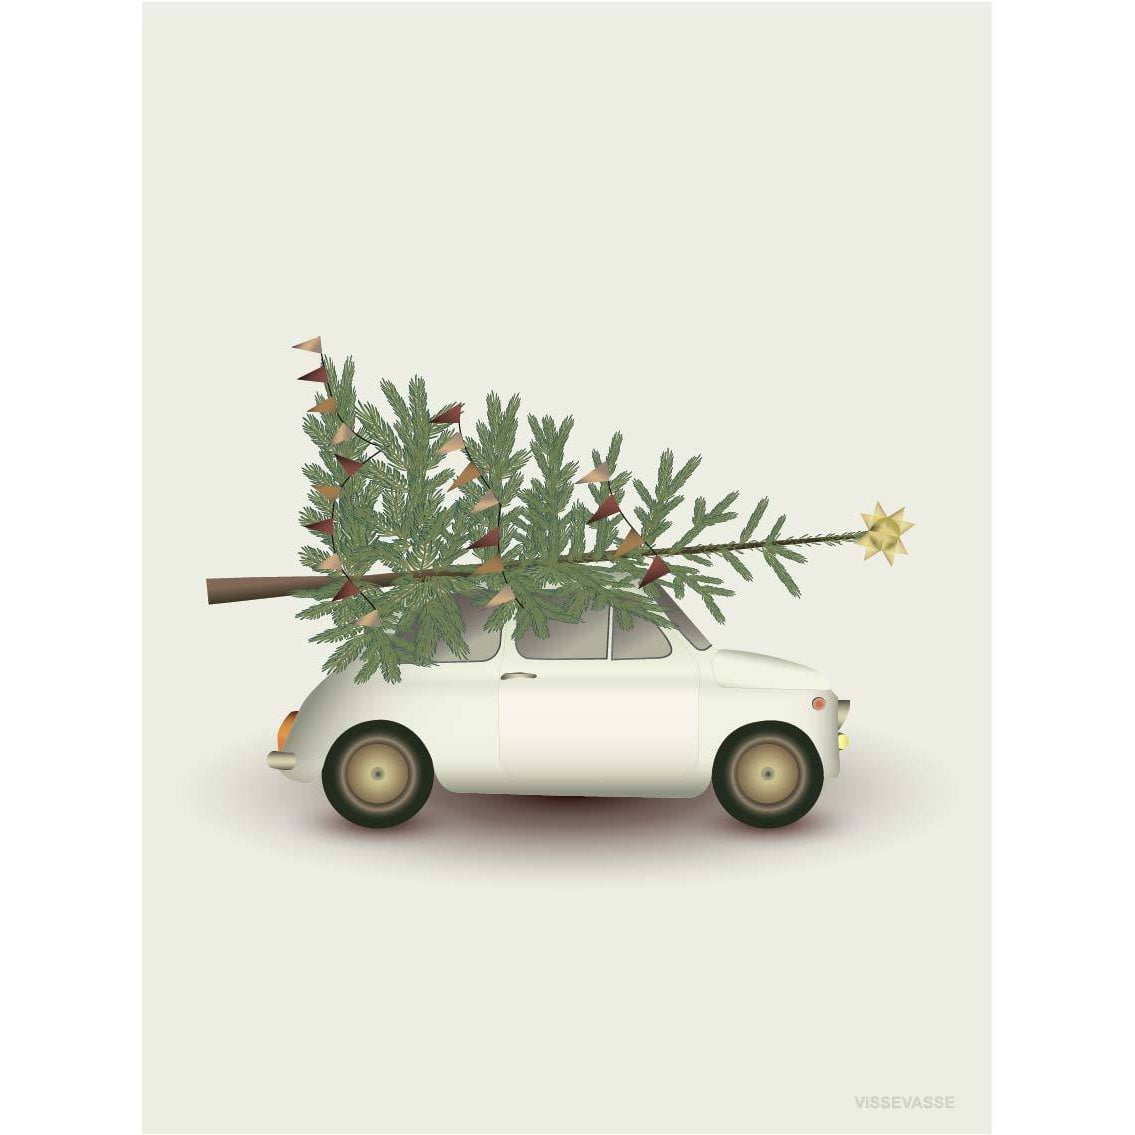 Tarjeta de felicitación de Vissevasse Christmas Tree & Little Car, 10,5x15 cm